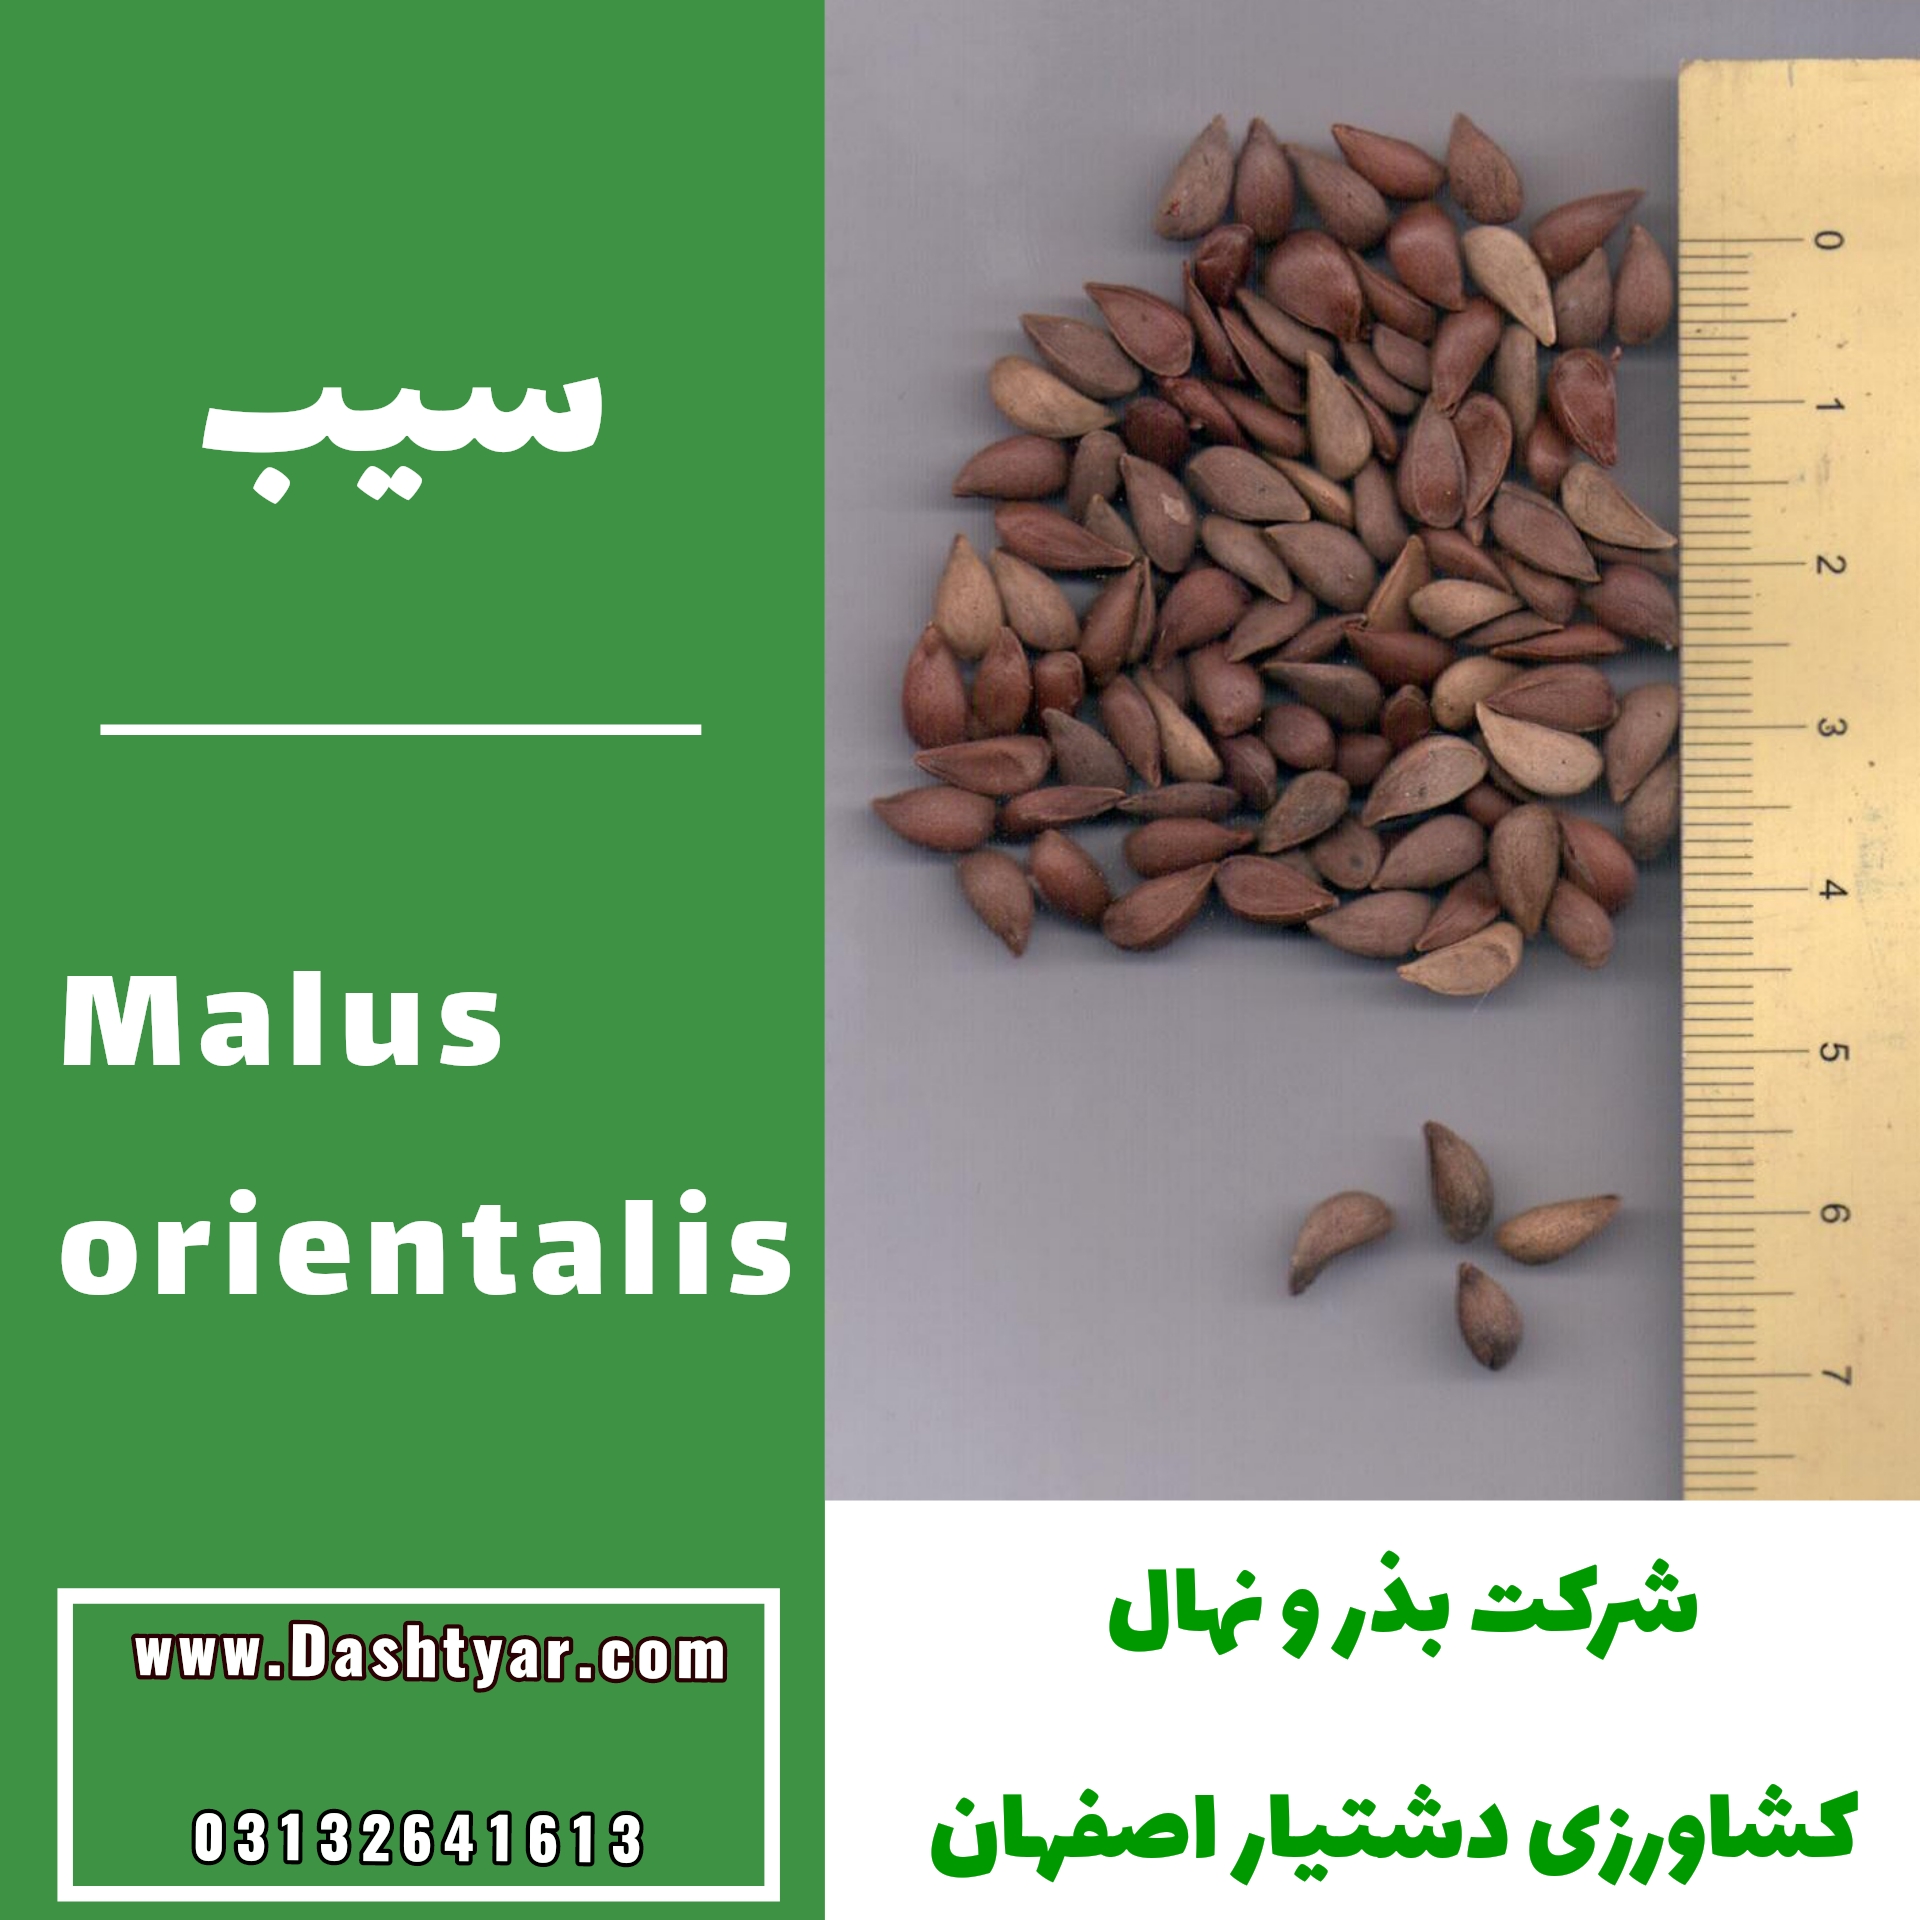 بذر سیب malus orientalis